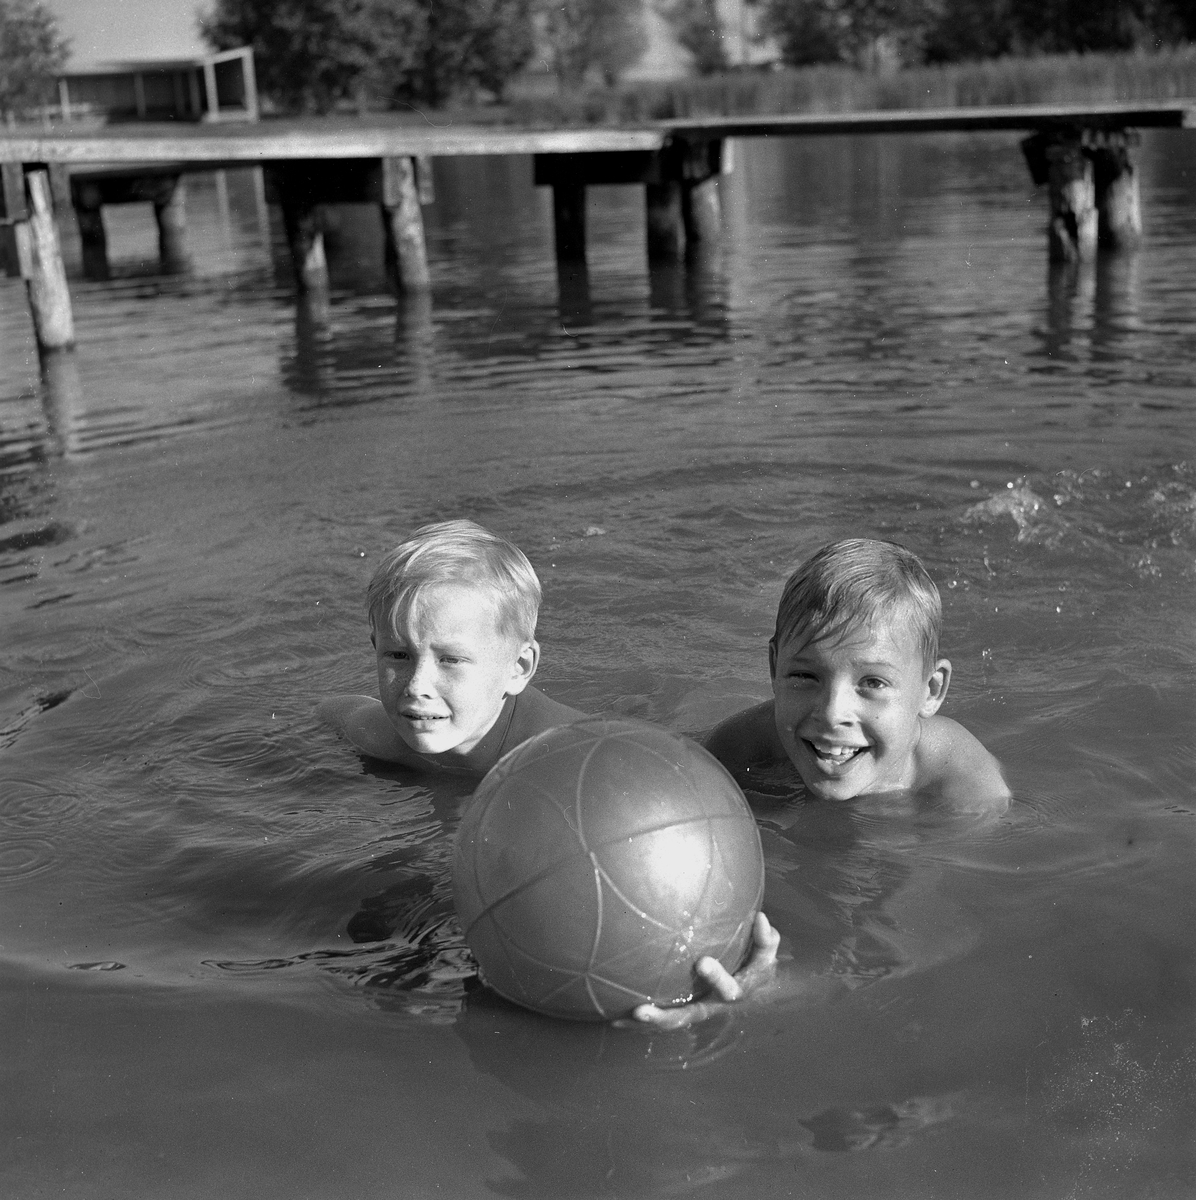 Sen badsäsong på Gustavsvik.
Augusti 1956.